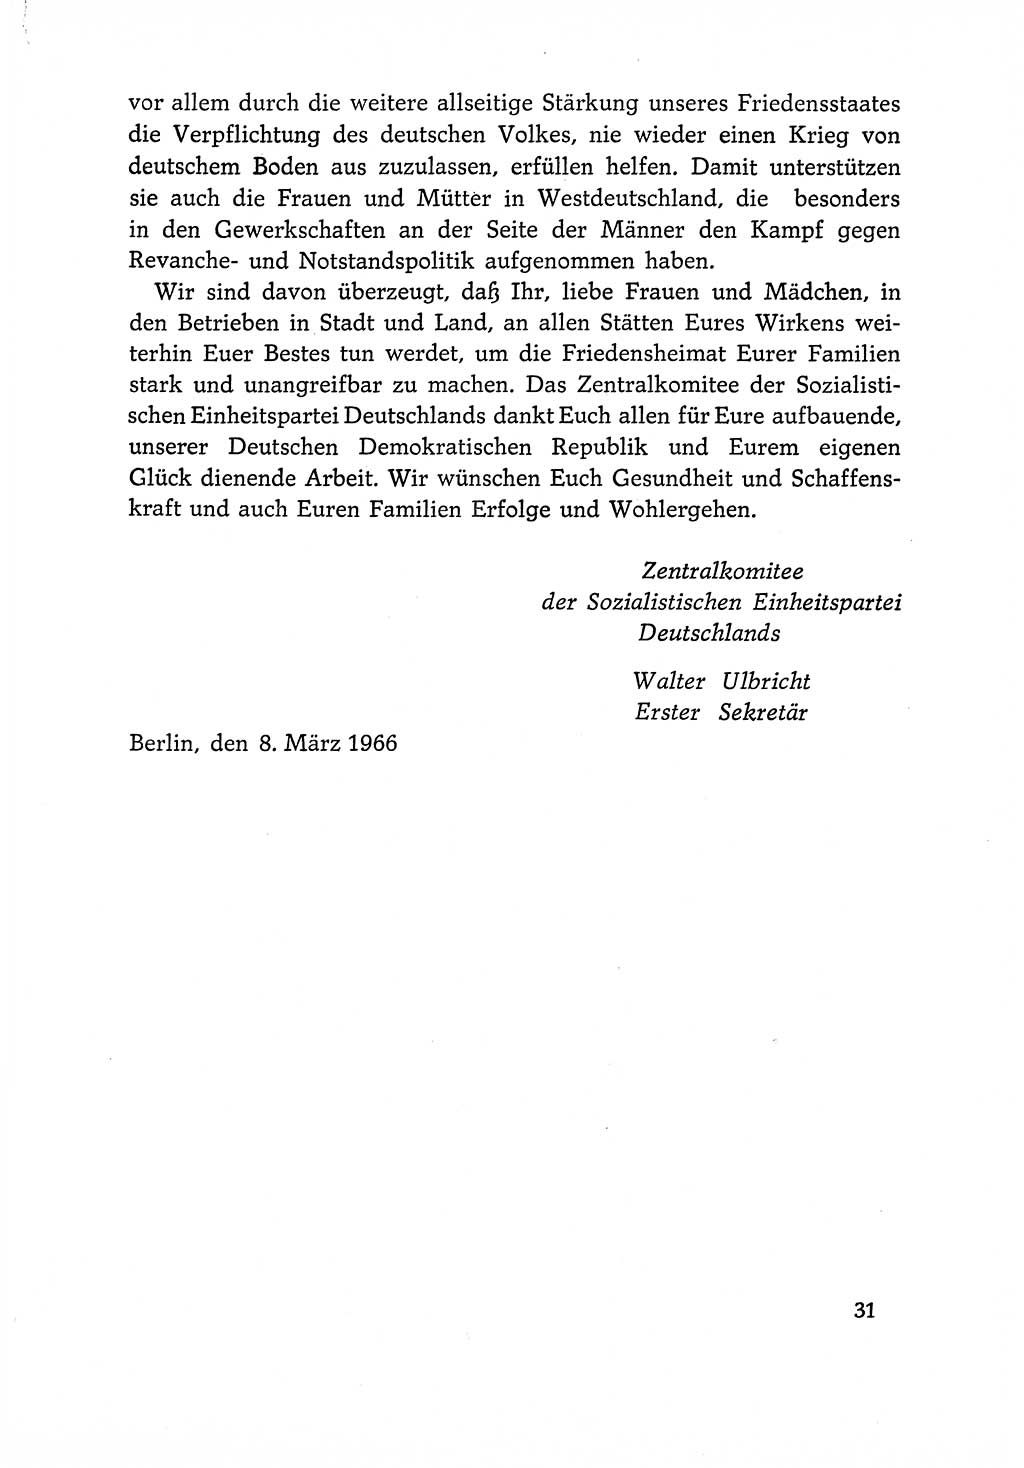 Dokumente der Sozialistischen Einheitspartei Deutschlands (SED) [Deutsche Demokratische Republik (DDR)] 1966-1967, Seite 31 (Dok. SED DDR 1966-1967, S. 31)